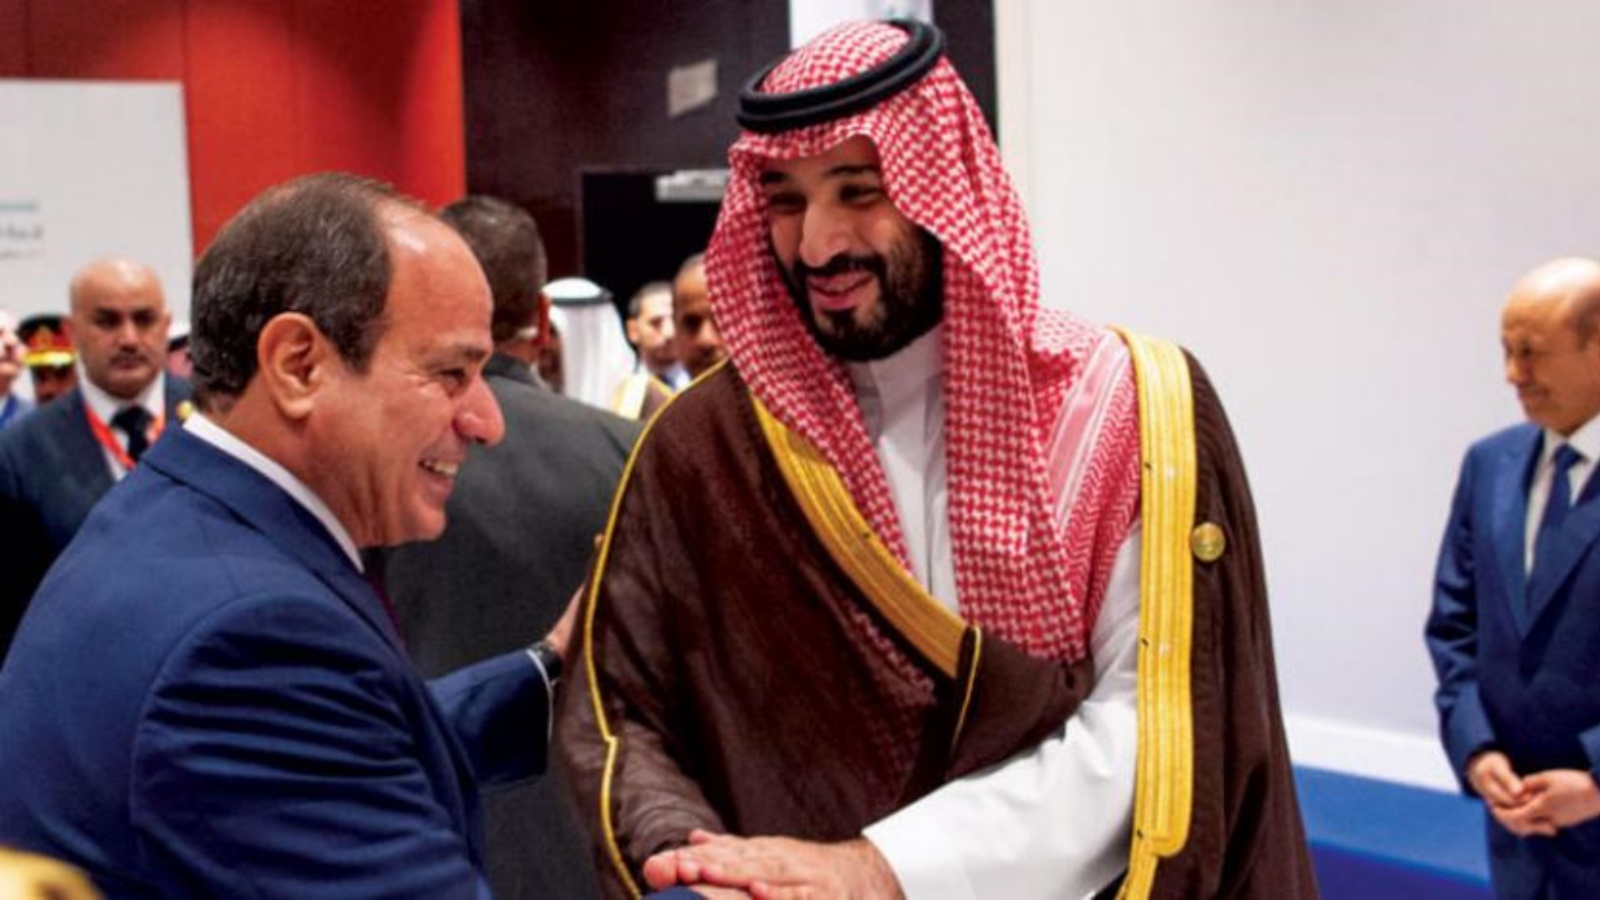 ولي العهد السعودي محمد بن سلمان والرئيس المصري عبد الفتاح السيسي على هامش القمة أمس (واس)